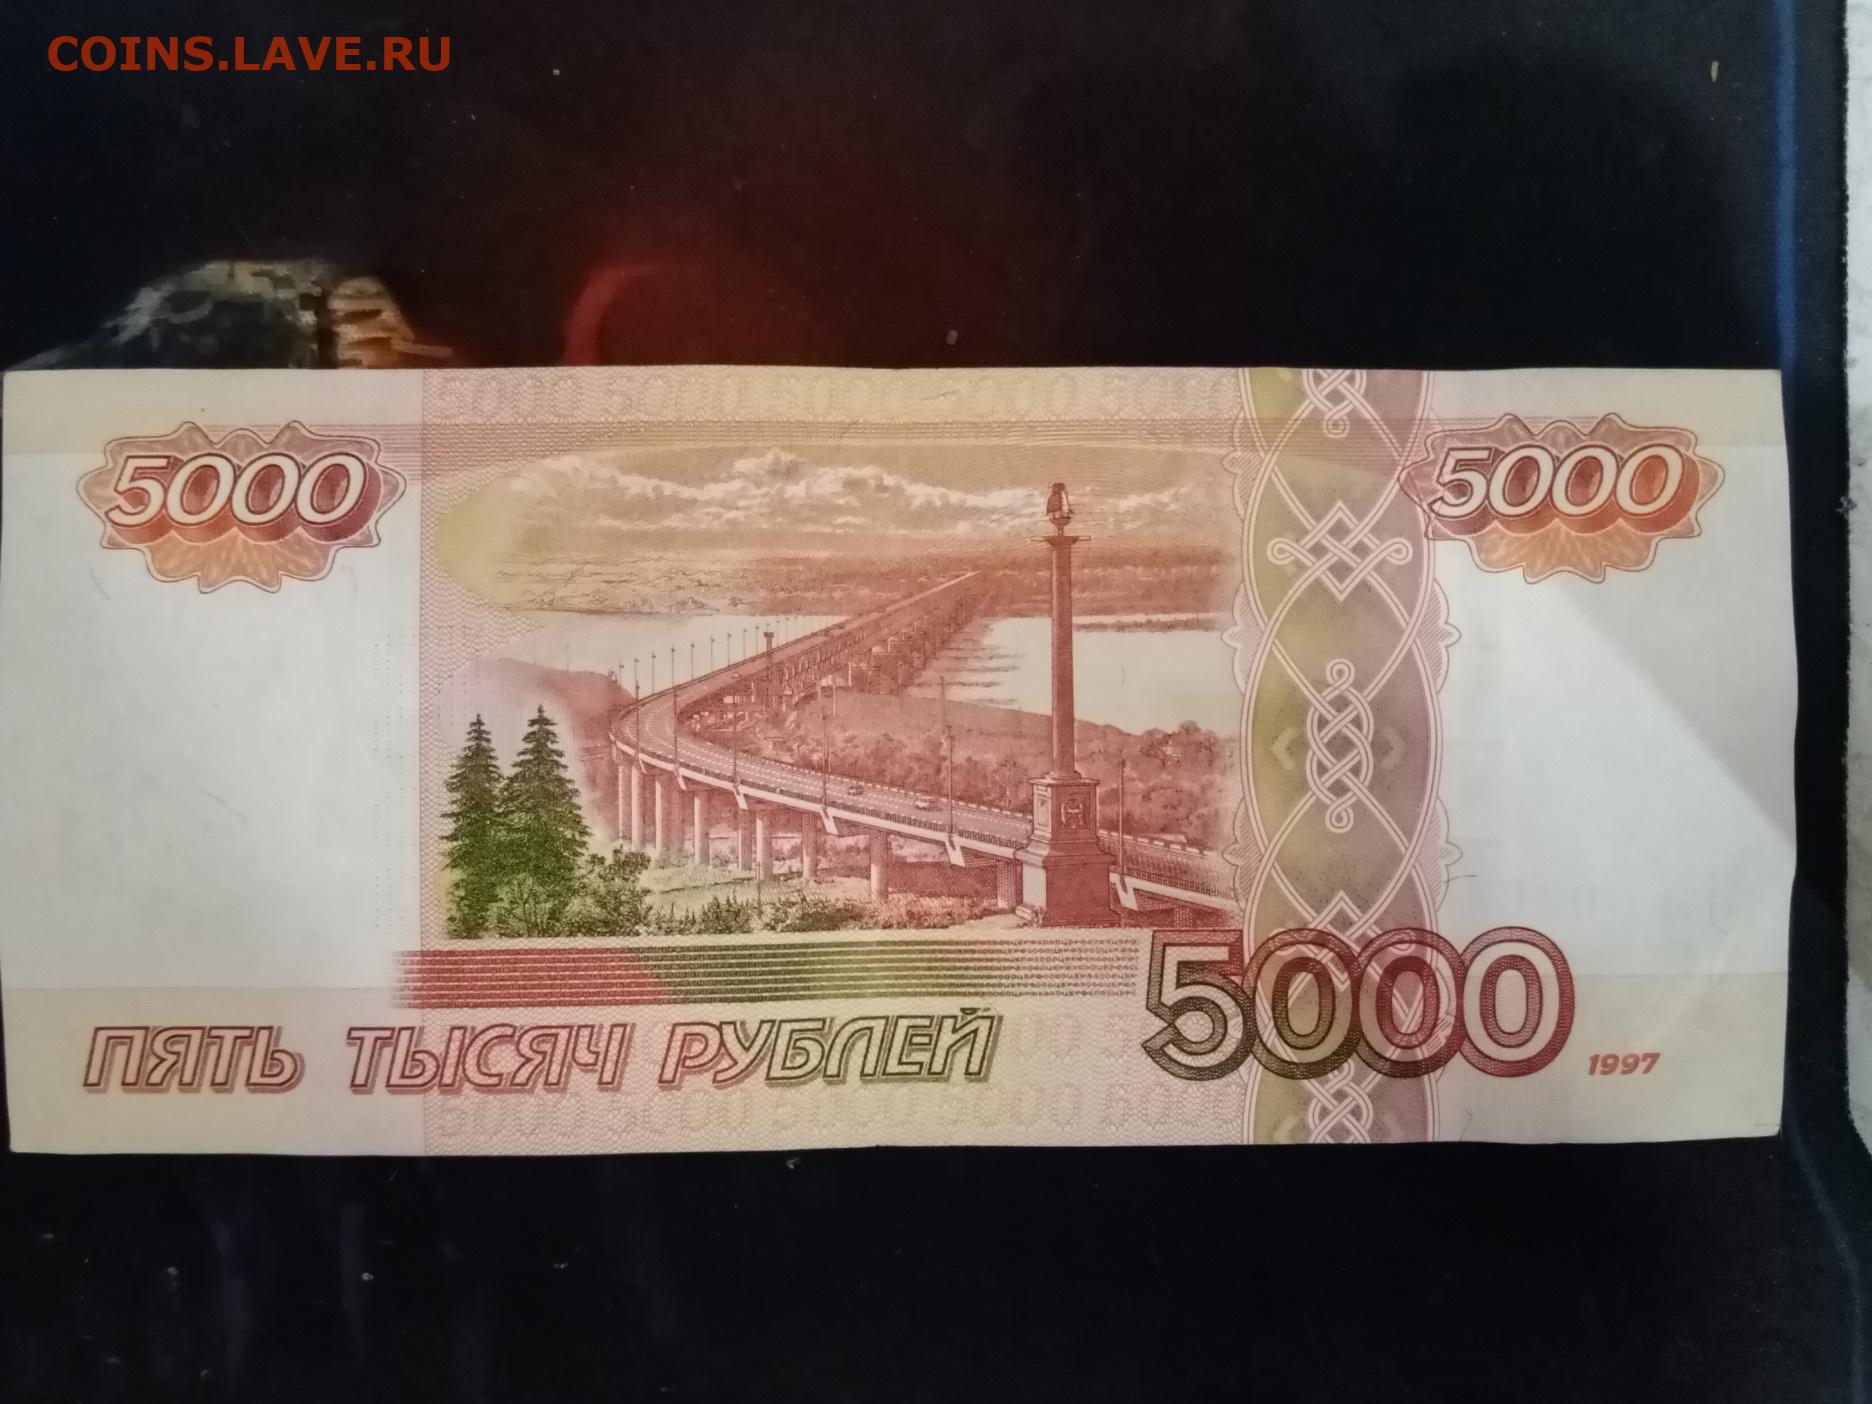 Номера 5000 рублей. Купюра 5000 1997 года. Купюра 5000 рублей 1997 года. 5000 Рублей 2006 года модификации. Оборотная сторона 5000 купюры.